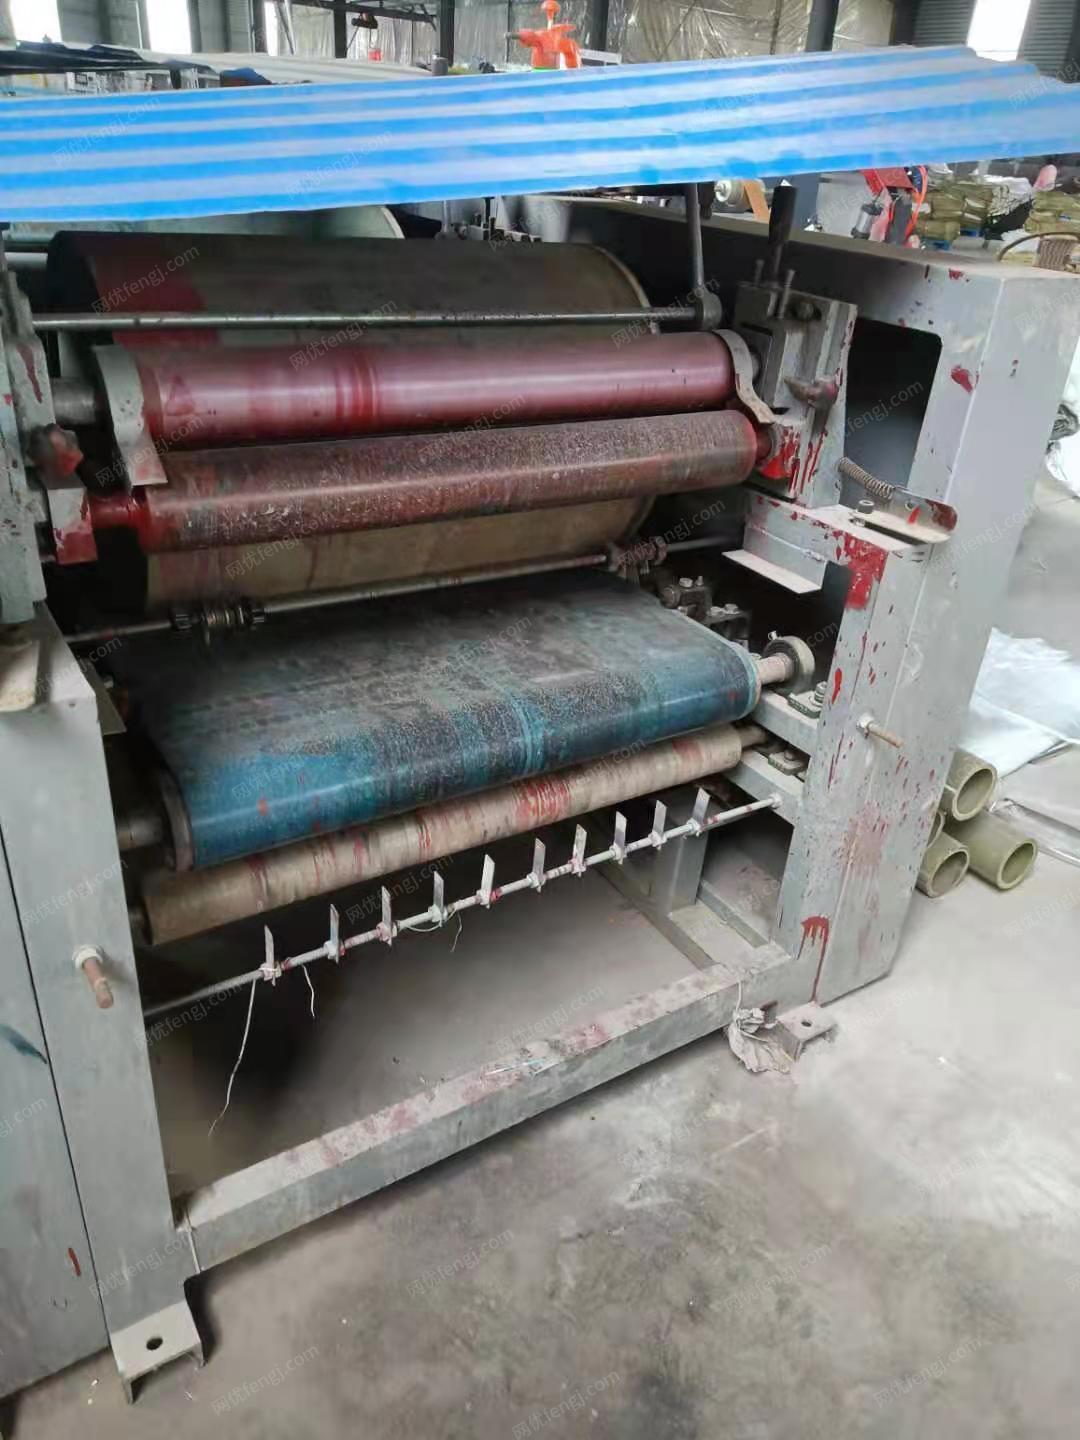 印刷厂就近出售600　4色普通编织袋胶版印刷机1台，600　5色电脑彩色编织袋印刷机1台，有图片